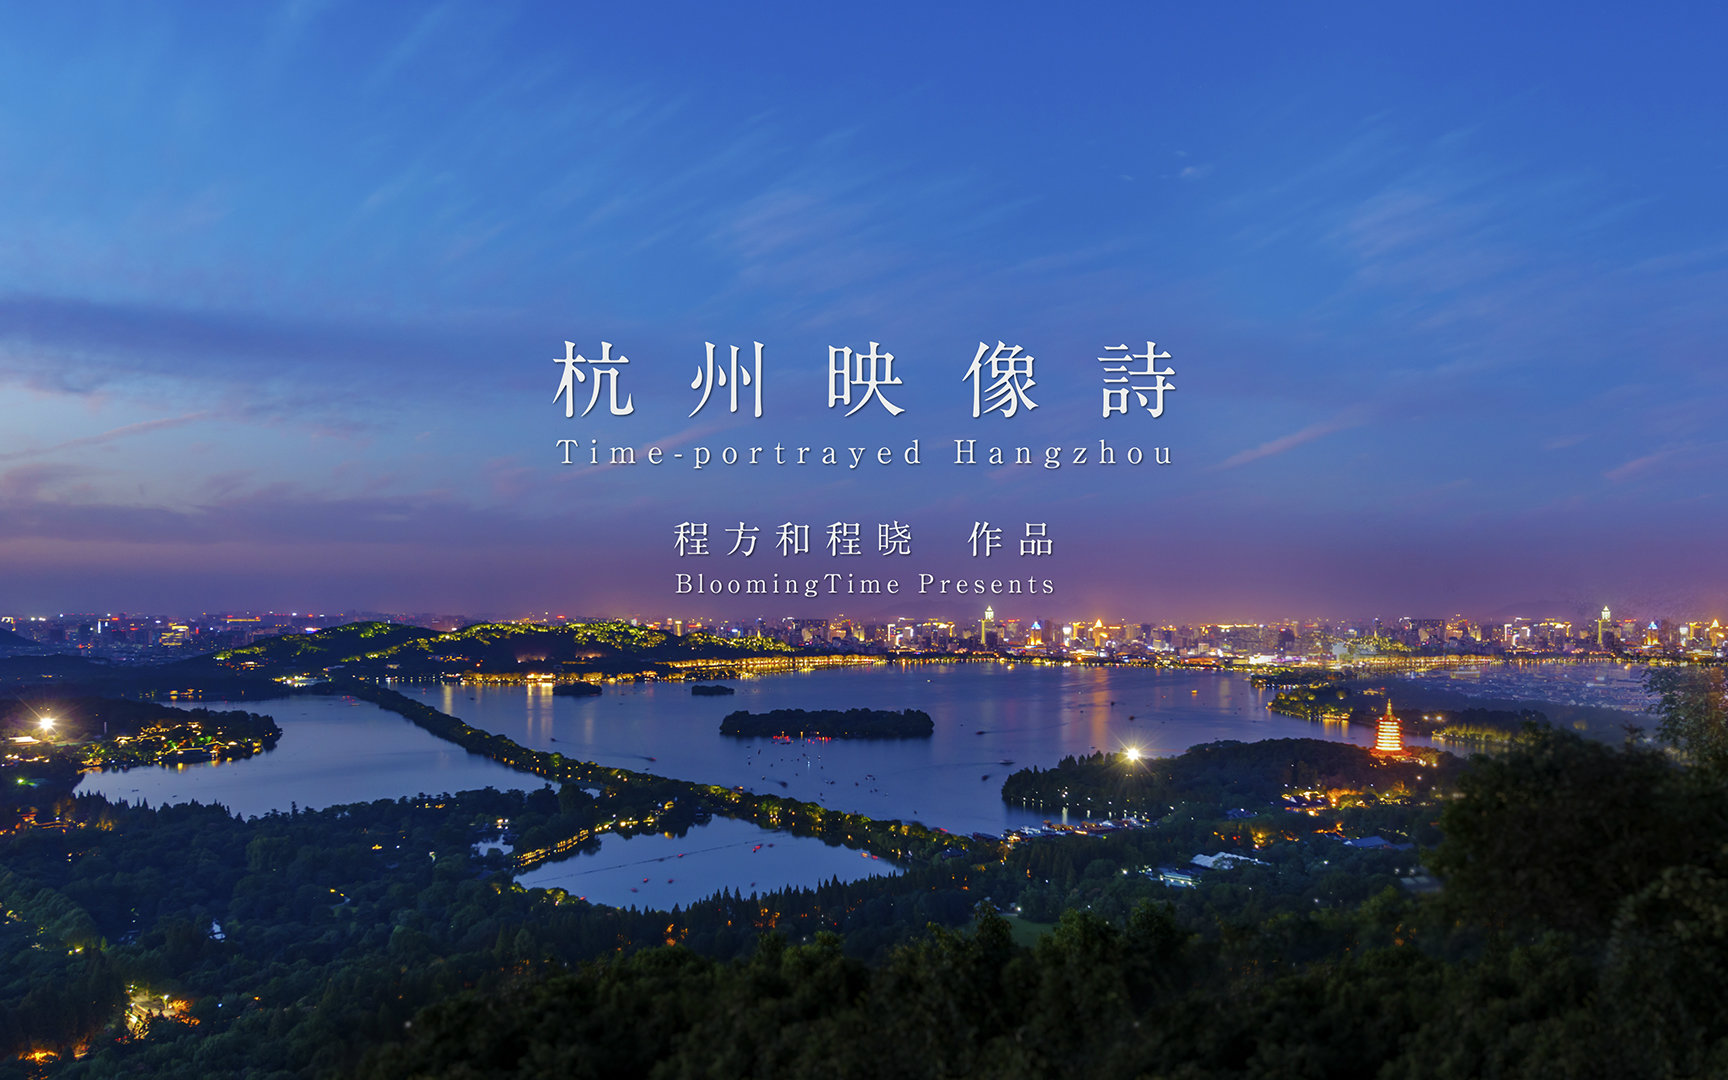 八分钟感受最精致的杭州 杭州映像诗 程方和程晓作品